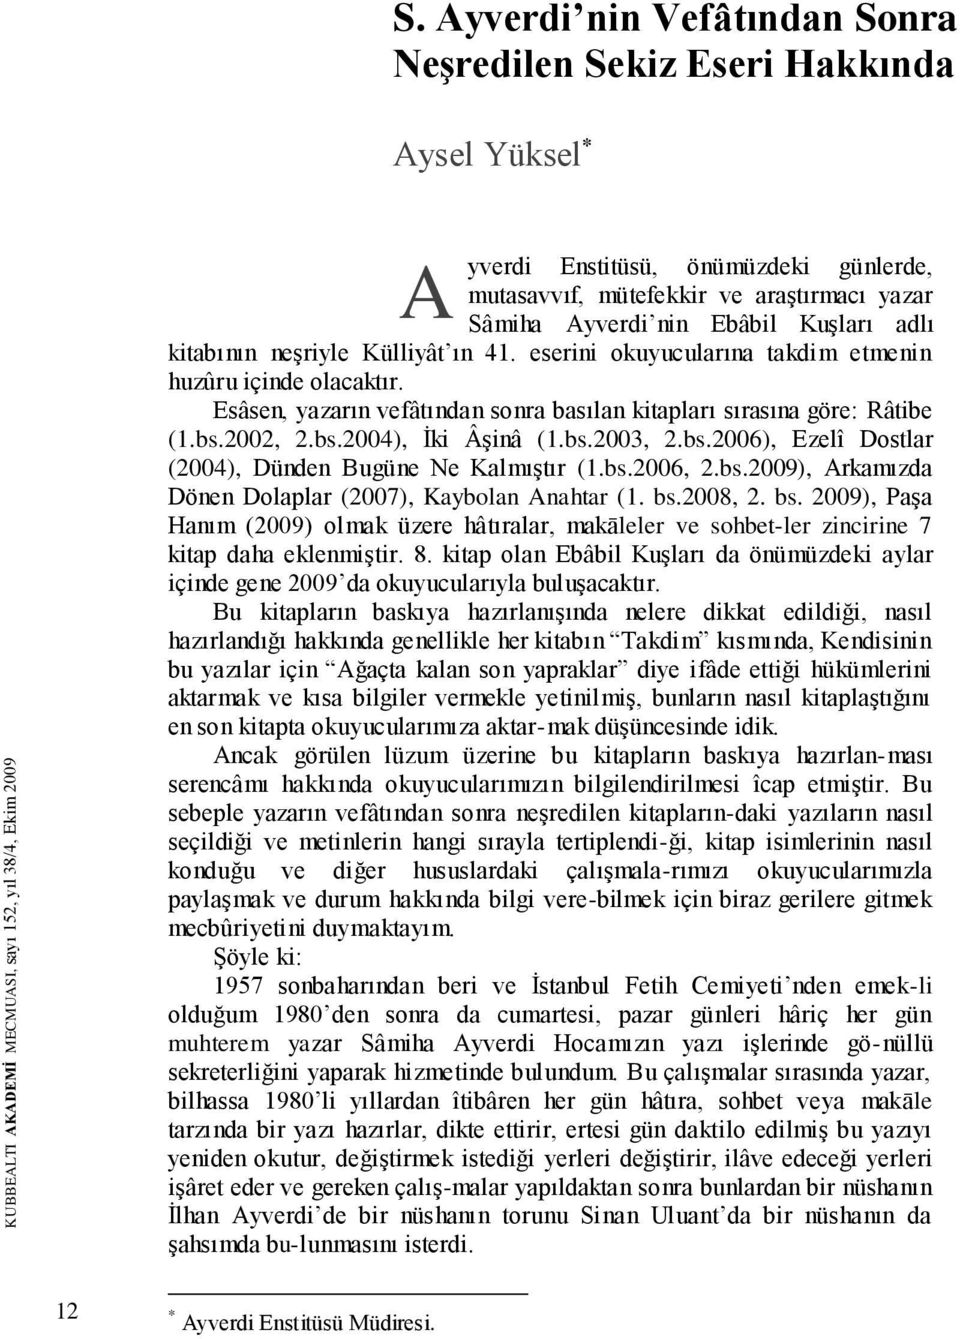 Esâsen, yazarın vefâtından sonra basılan kitapları sırasına göre: Râtibe (1.bs.2002, 2.bs.2004), Ġki ÂĢinâ (1.bs.2003, 2.bs.2006), Ezelî Dostlar (2004), Dünden Bugüne Ne KalmıĢtır (1.bs.2006, 2.bs.2009), Arkamızda Dönen Dolaplar (2007), Kaybolan Anahtar (1.